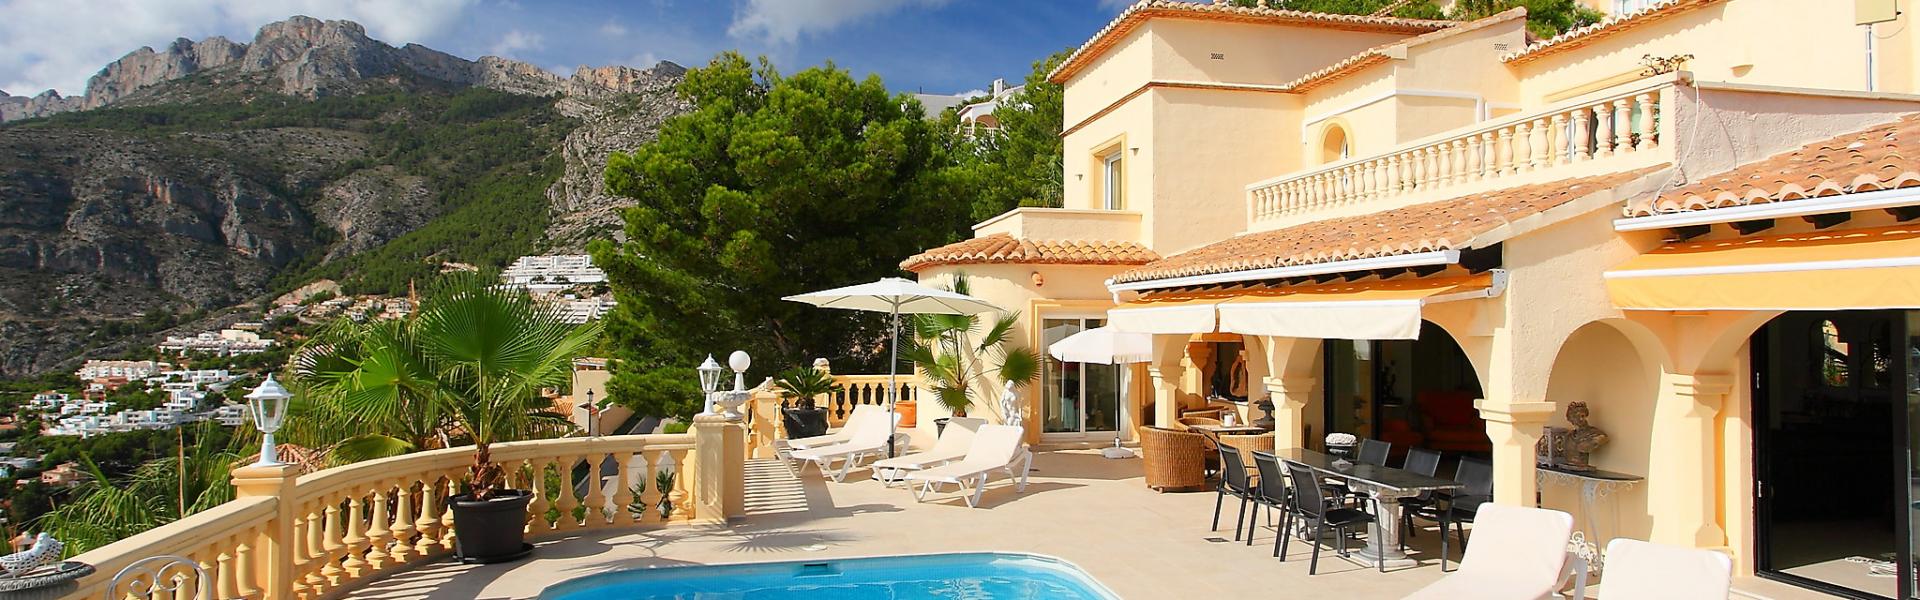 Vakantiehuis in Zuid-Frankrijk met zwembad - HomeToGo